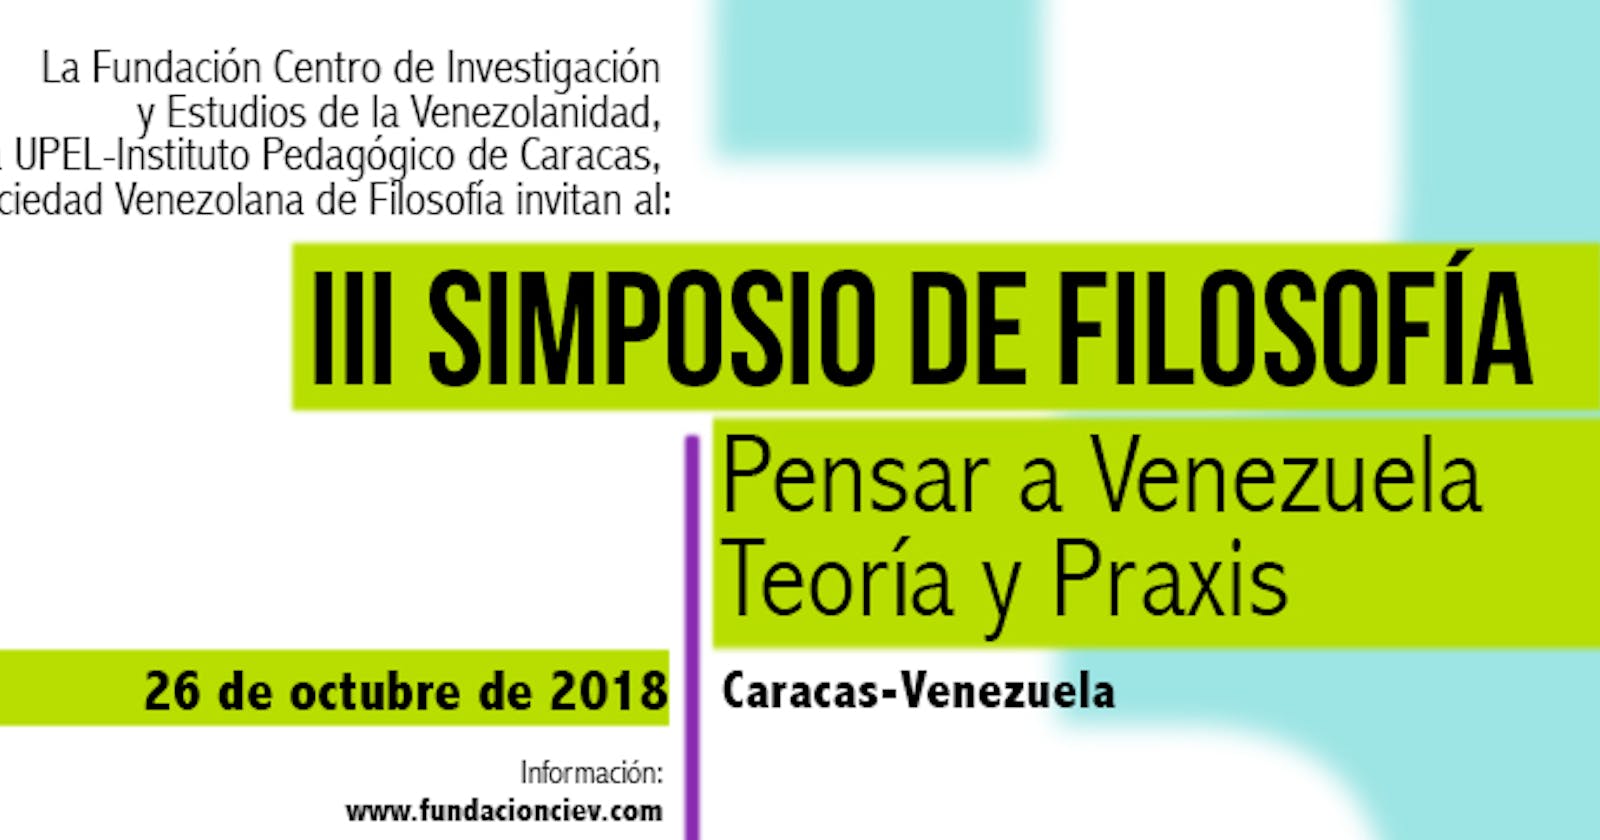 Actividad realizada: III Simposio de Filosofía: Pensar a Venezuela. Teoría y Praxis